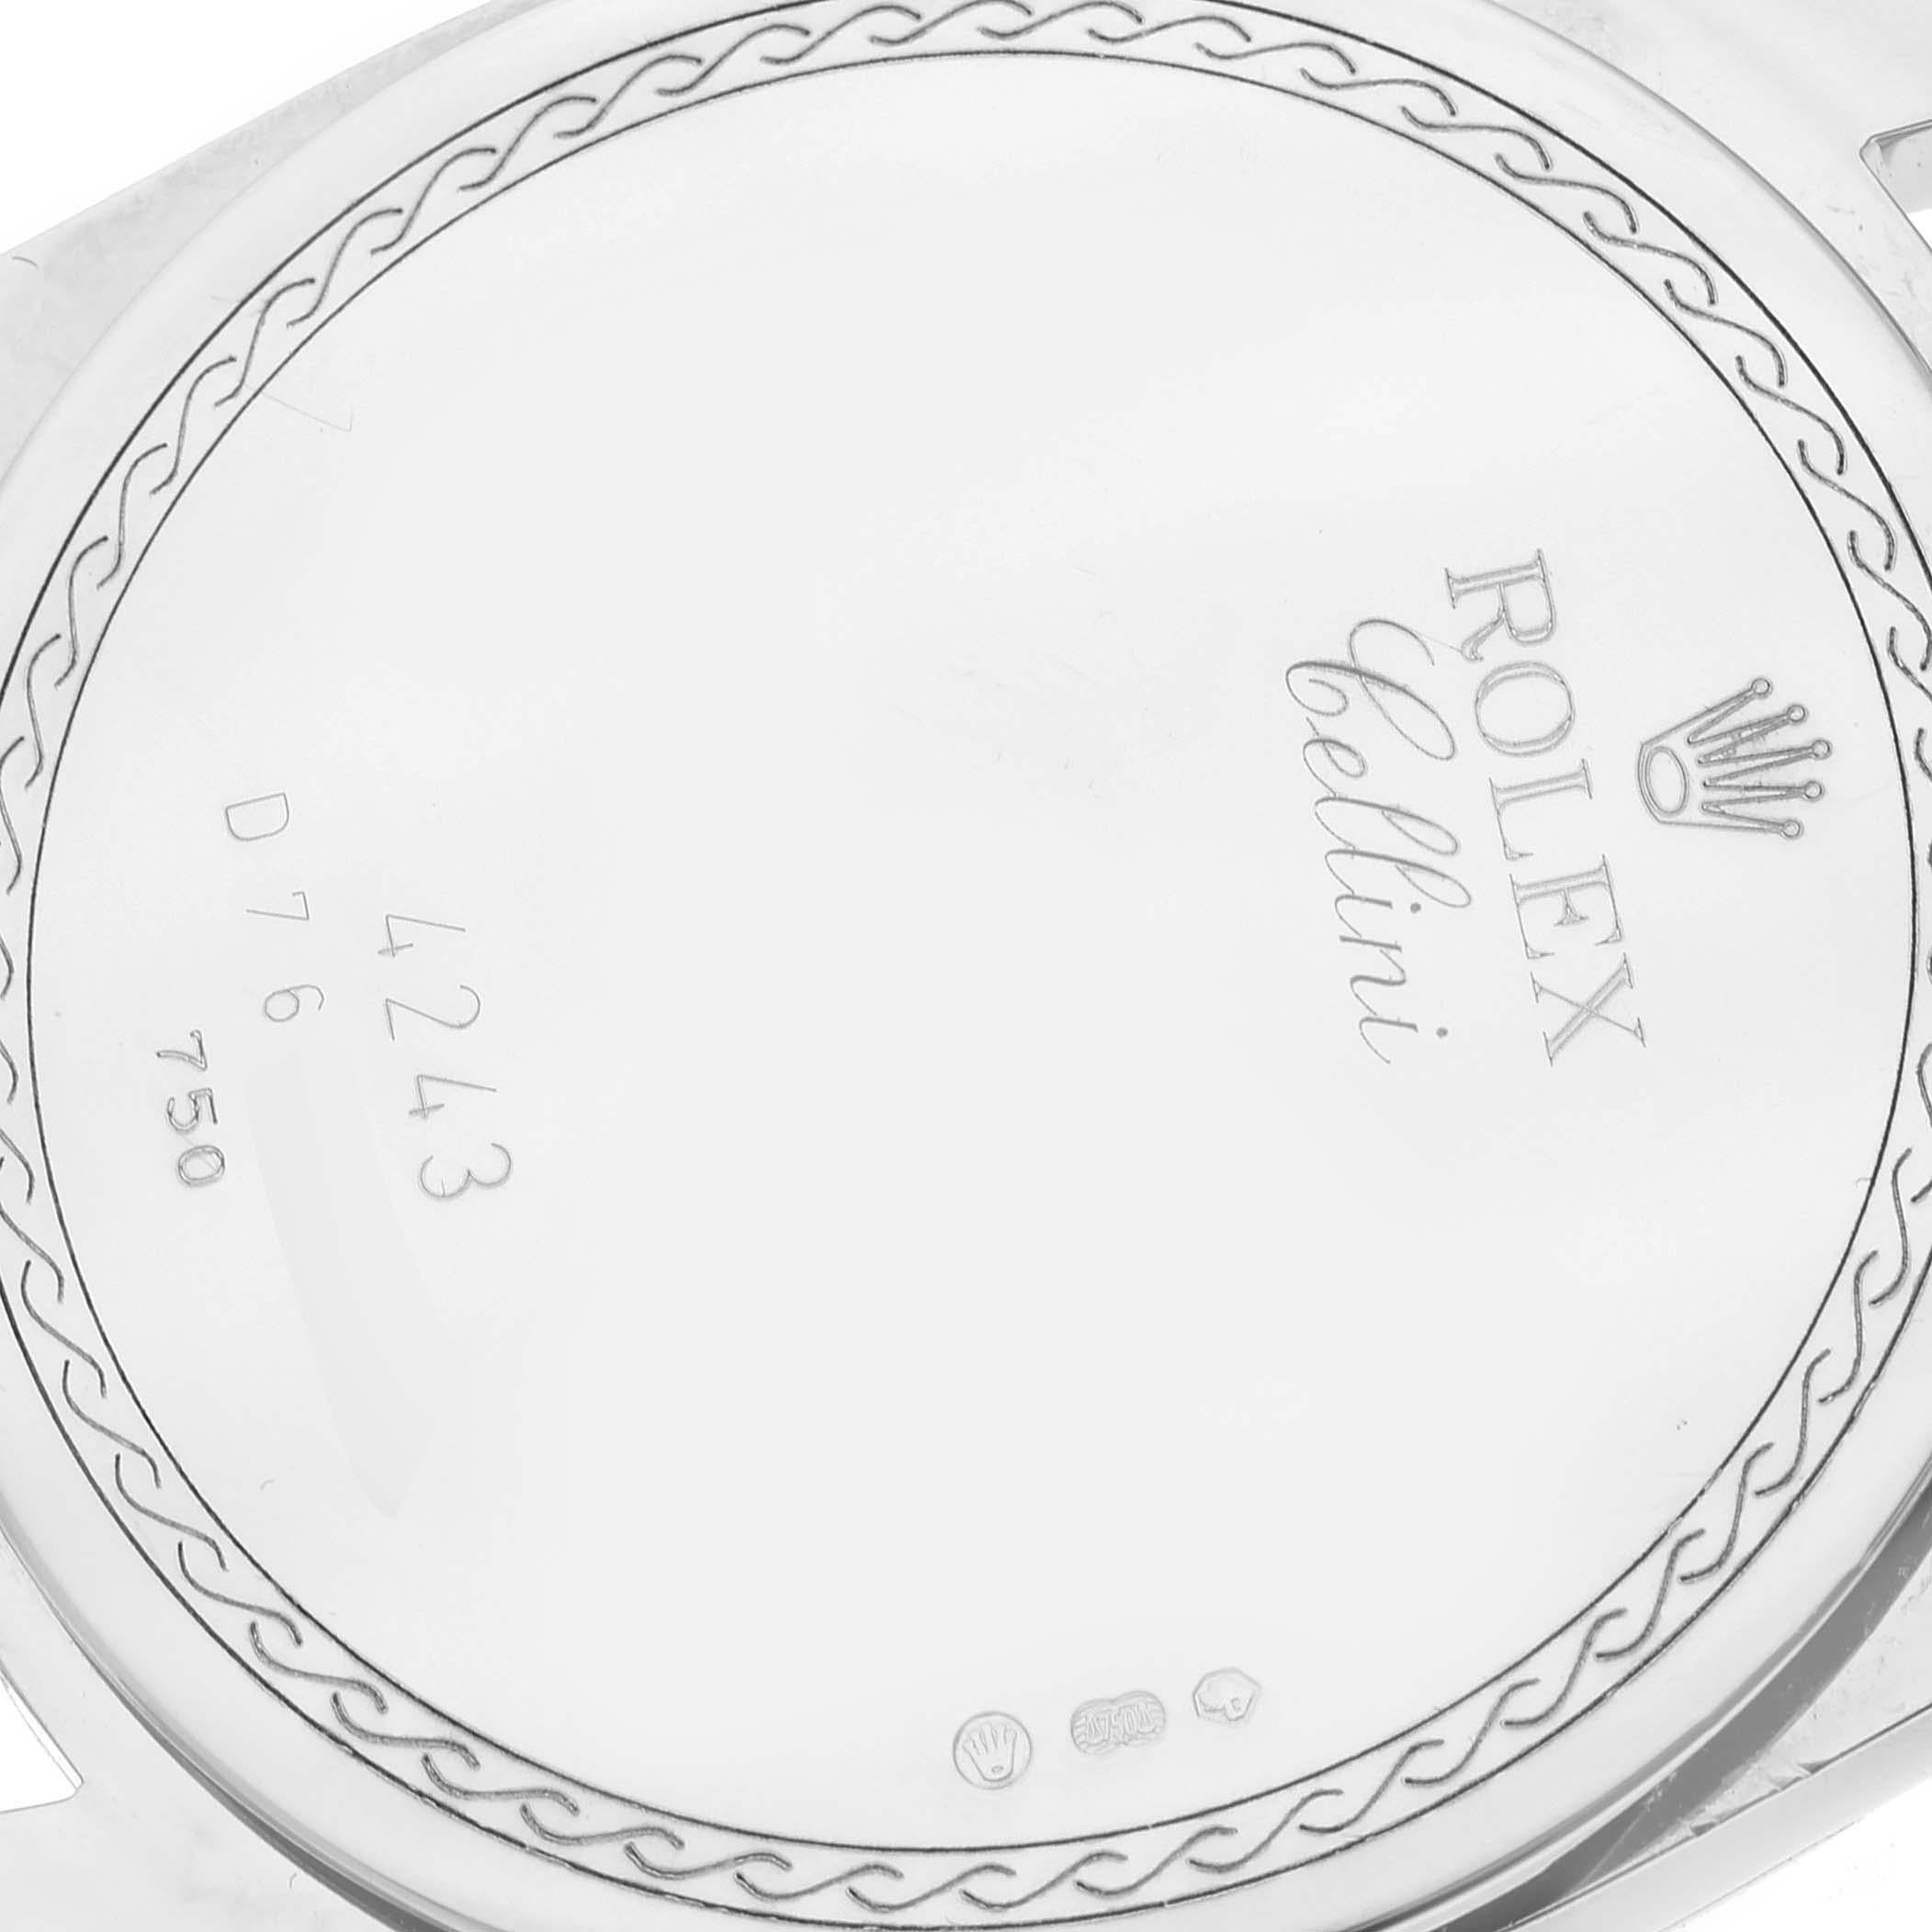 Rolex Cellini Danaos White Gold Silver Dial Mens Watch 4243 Box Card In Excellent Condition In Atlanta, GA